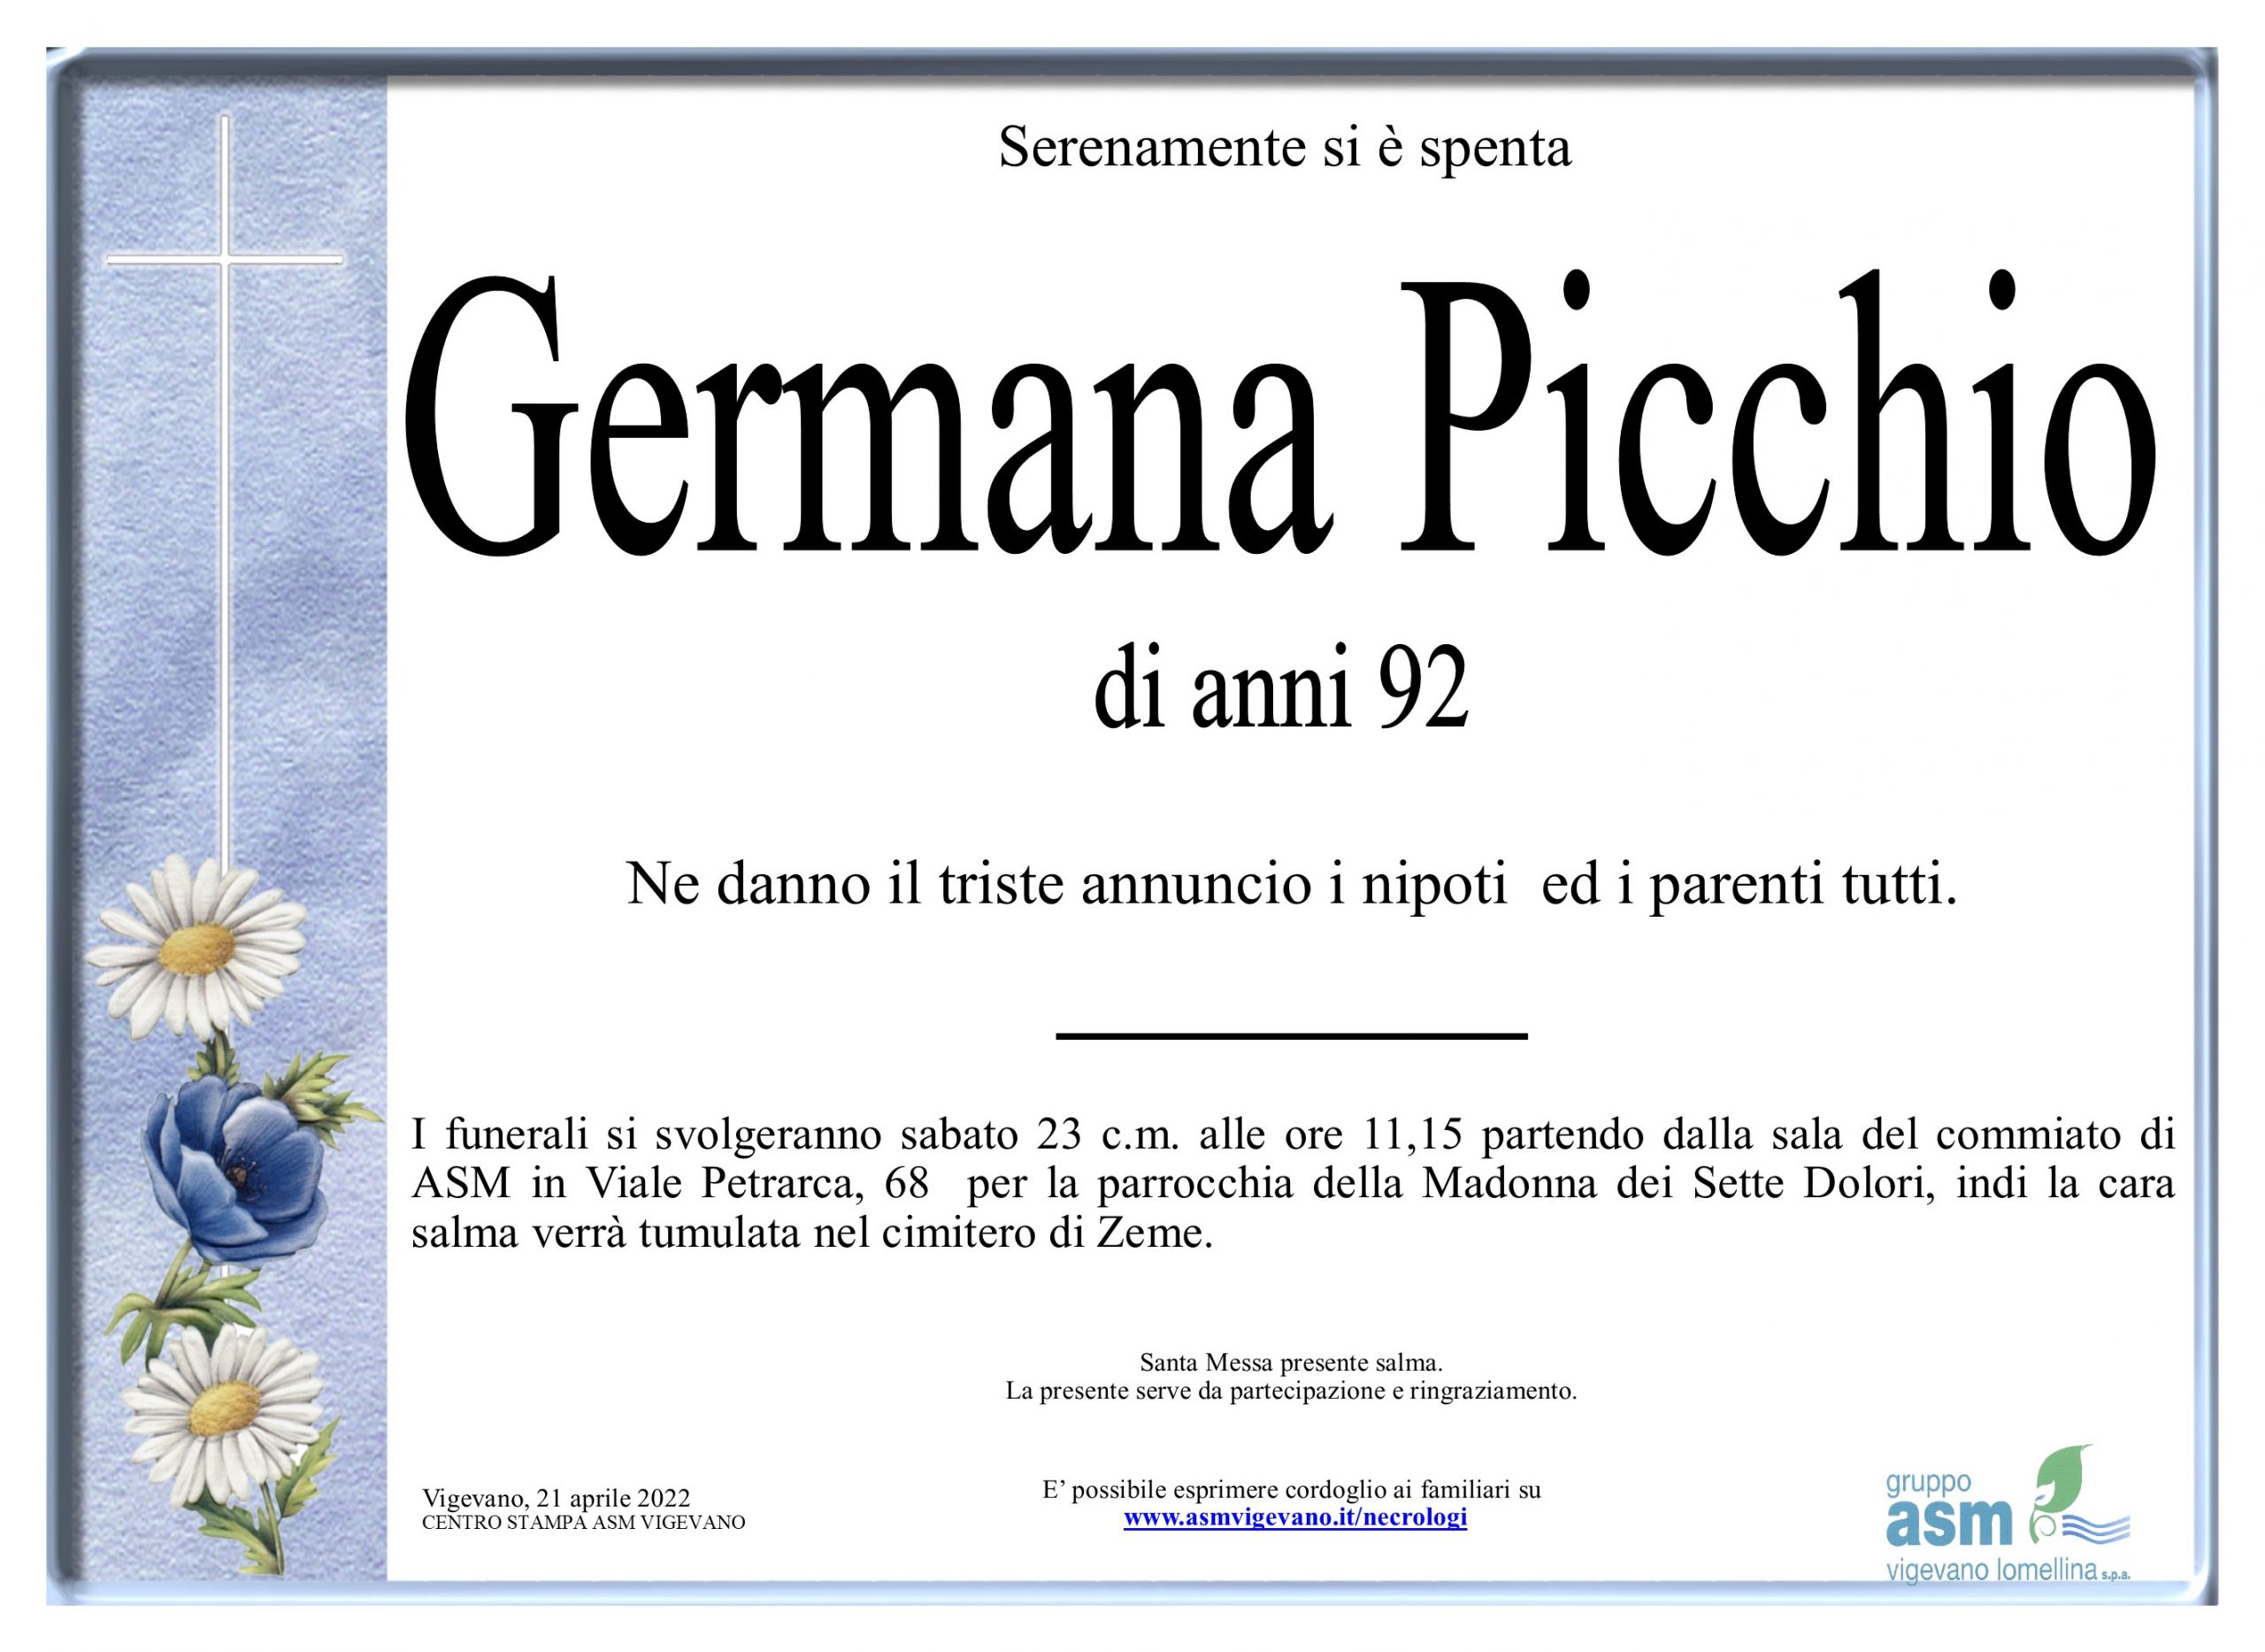 Germana Picchio